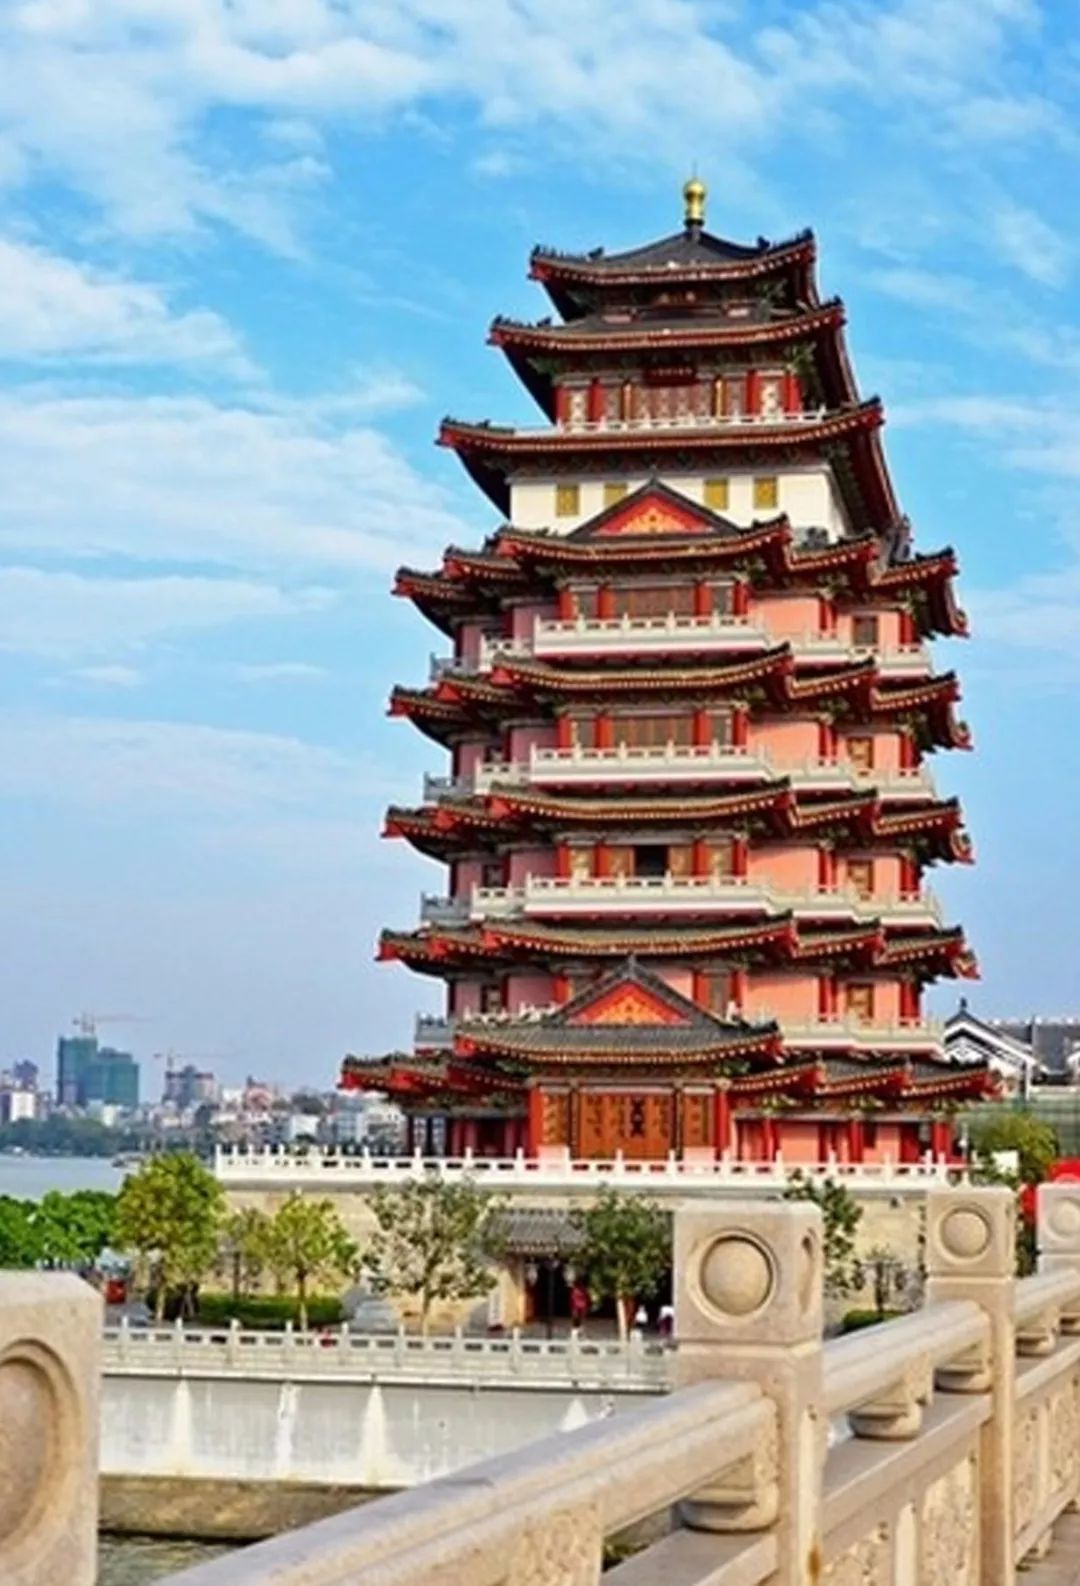 惠州建筑特色图片